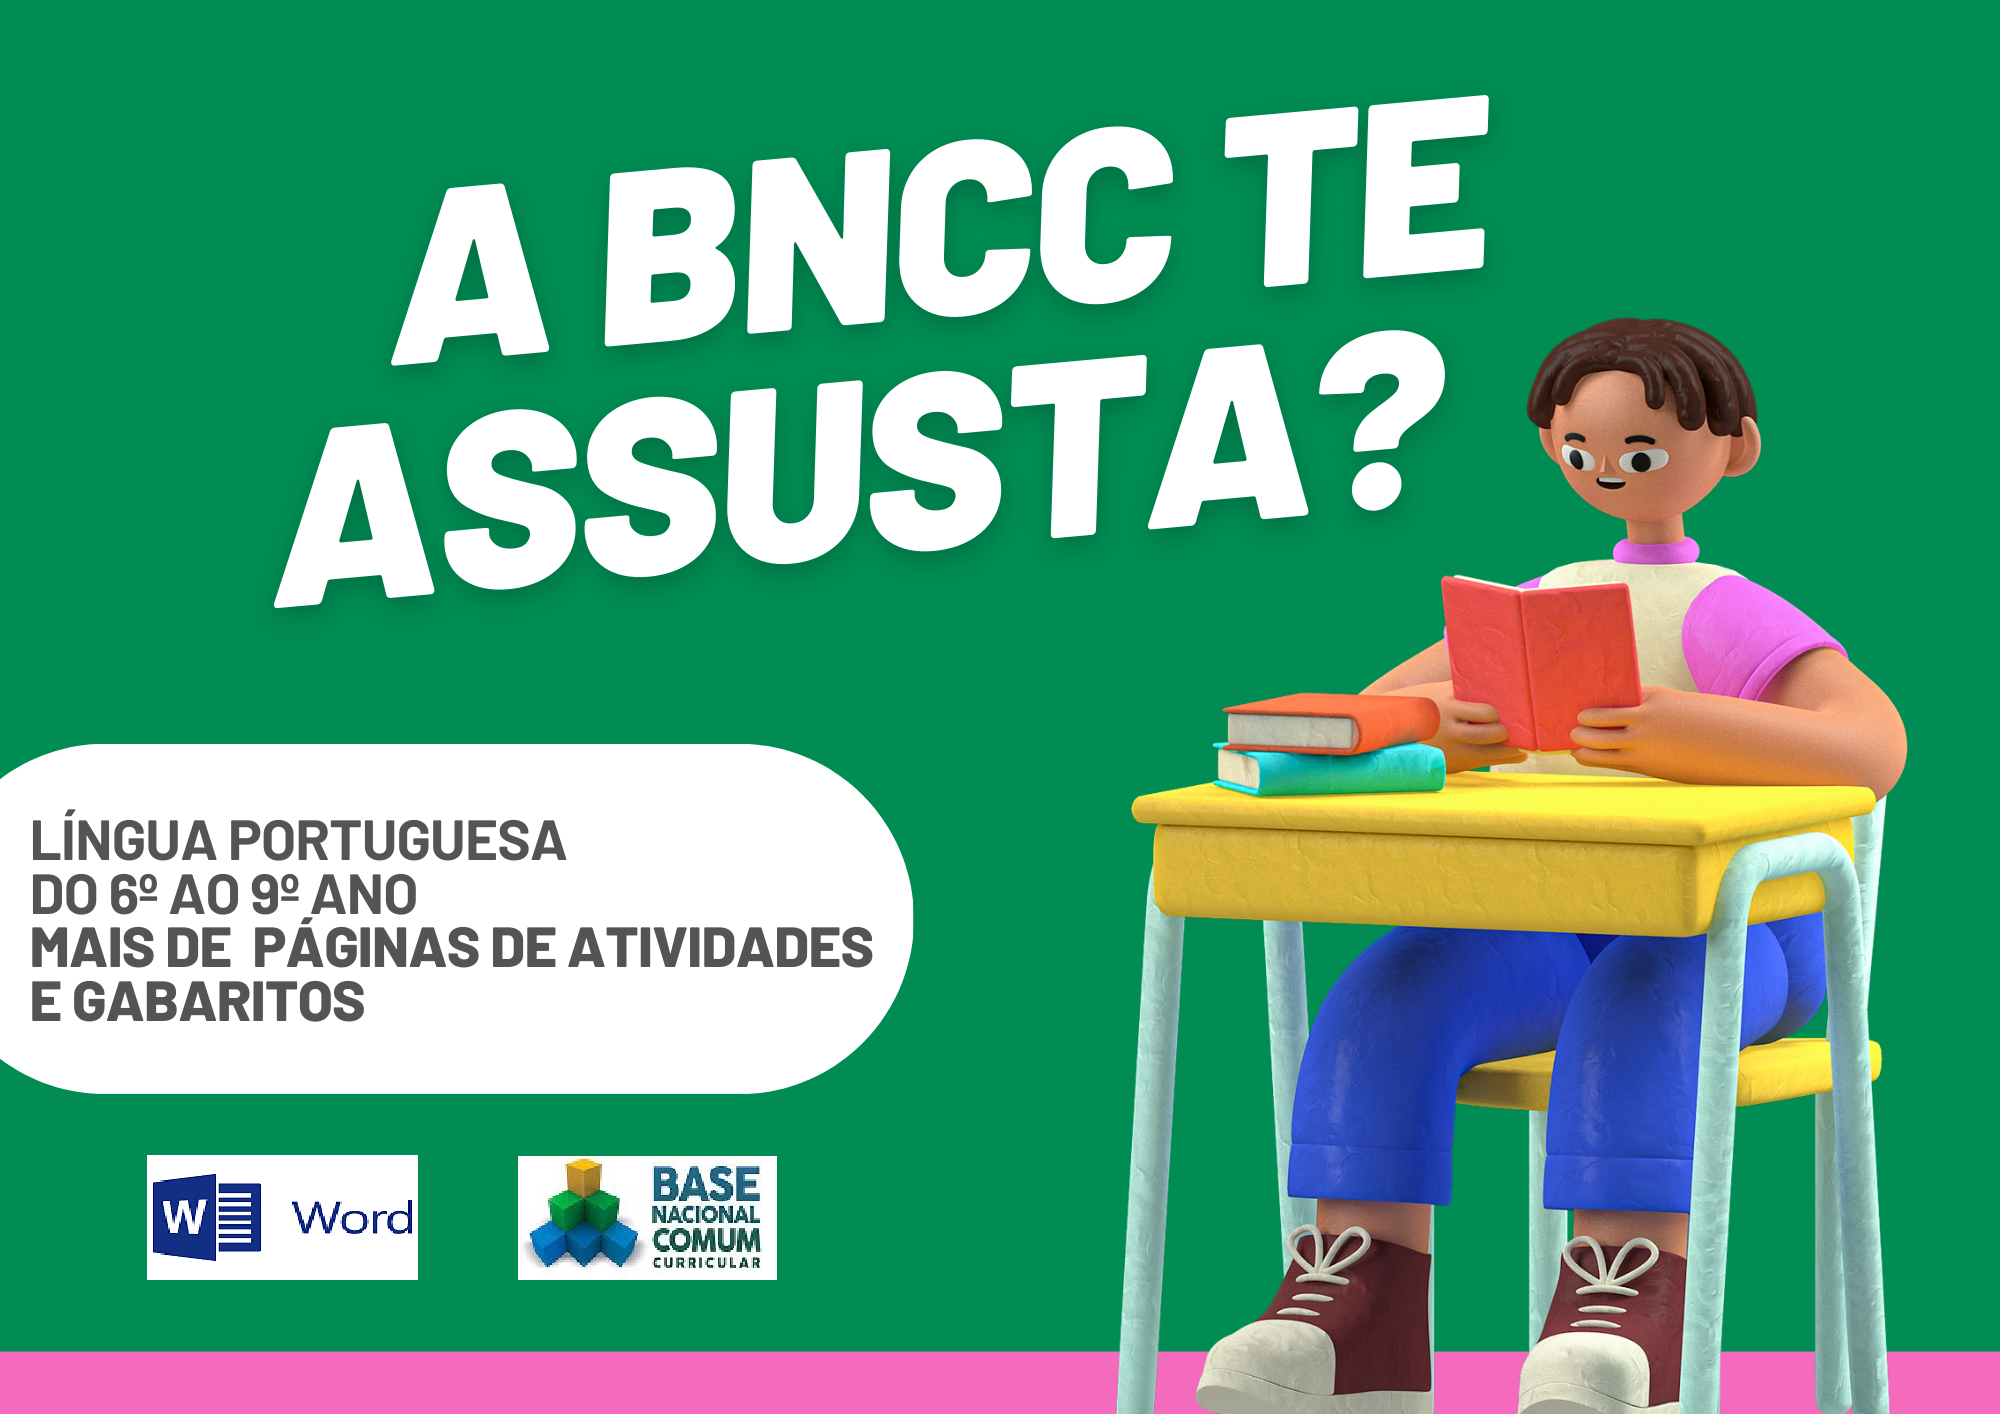 A BNCC te assusta lingua portuguesa do 6º ao 9º ano mais de páginas de atividades e gabaritos com um aluno segurando um livro e símbolo do Word e da BNCC